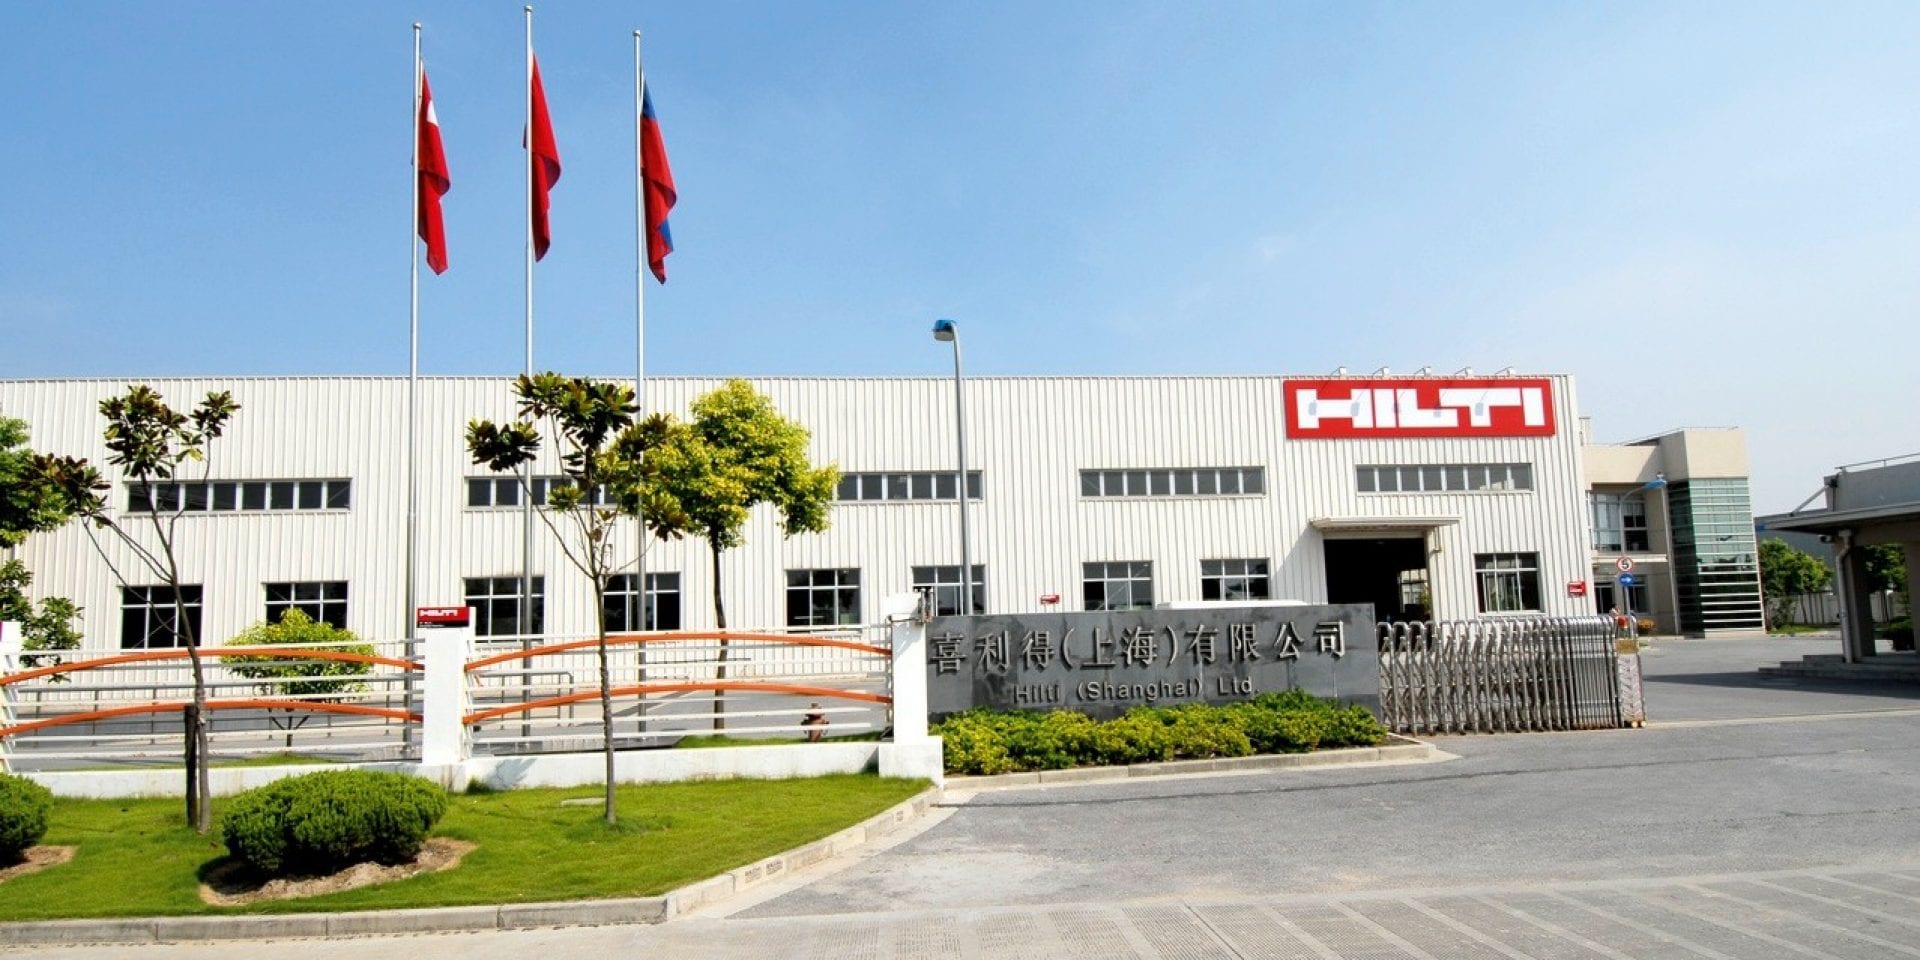 Hilti plant Shanghai China